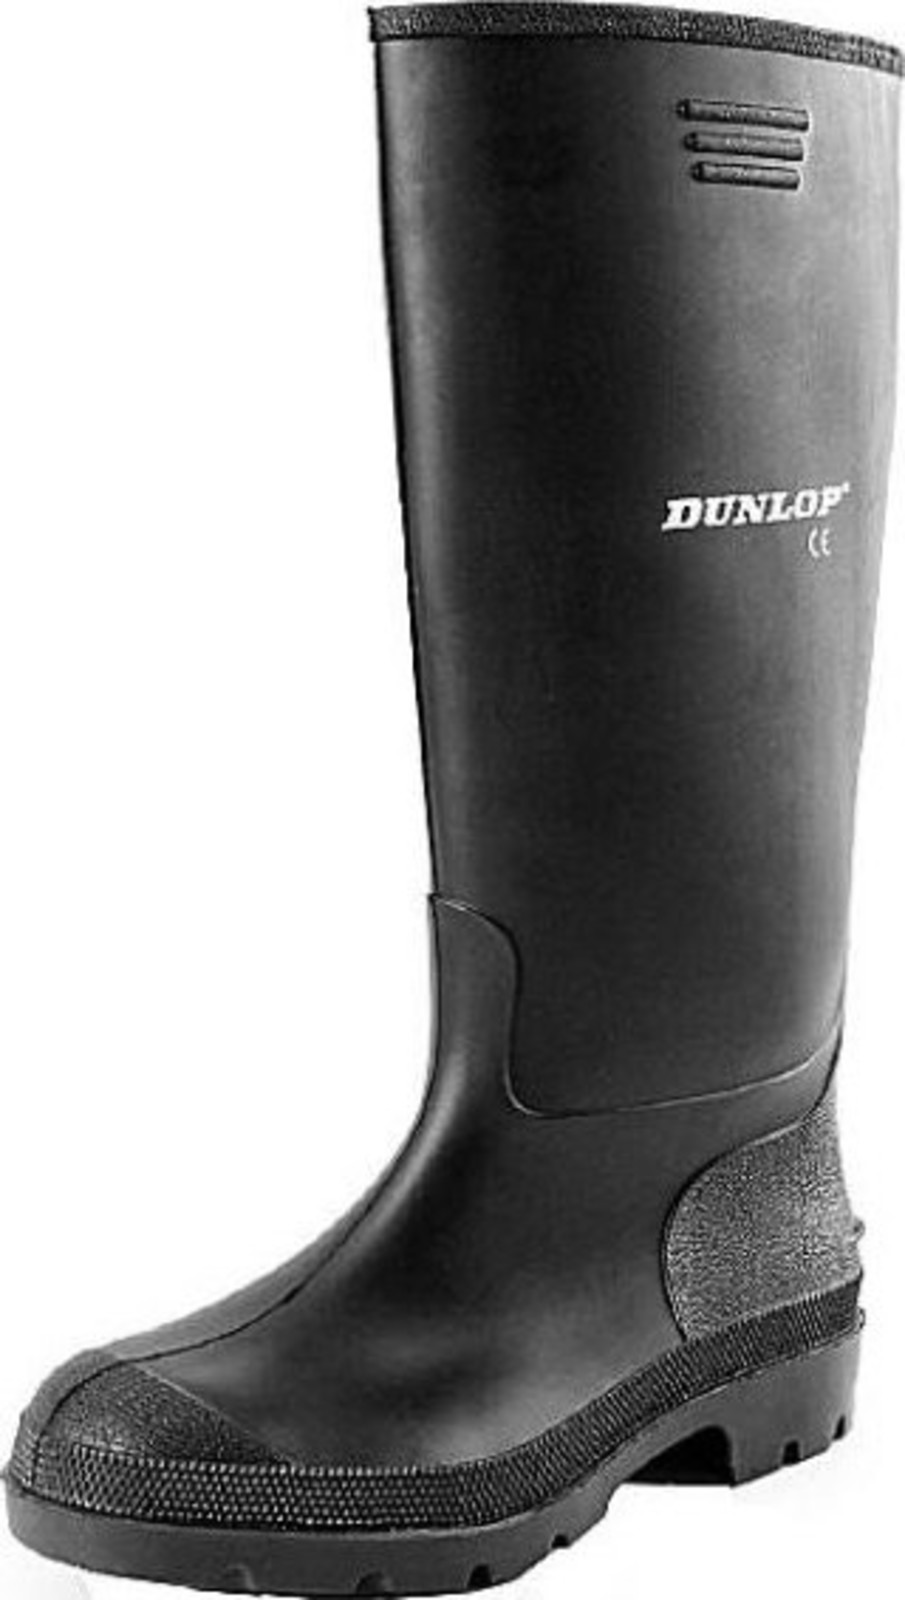 Gumáky Dunlop Preismeister PVC - veľkosť: 46, farba: čierna